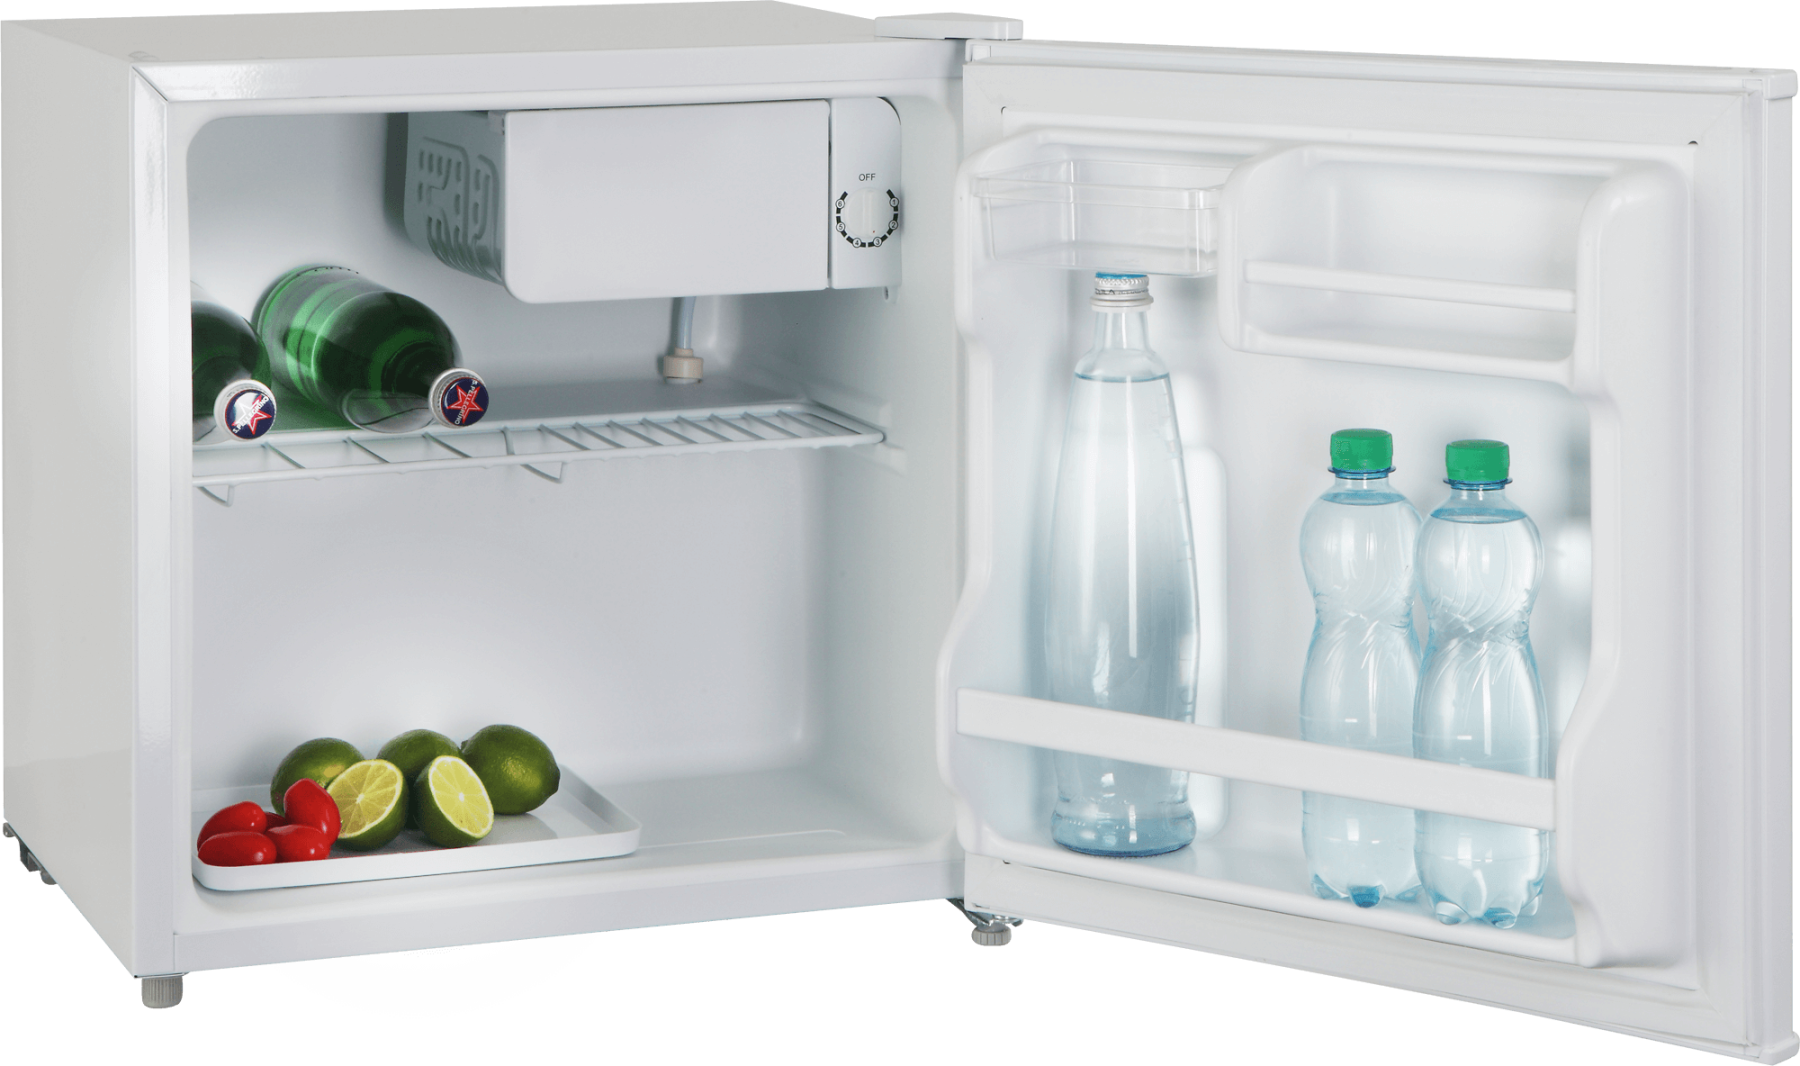 Описание и преимущества мини холодильника с морозильной камерой